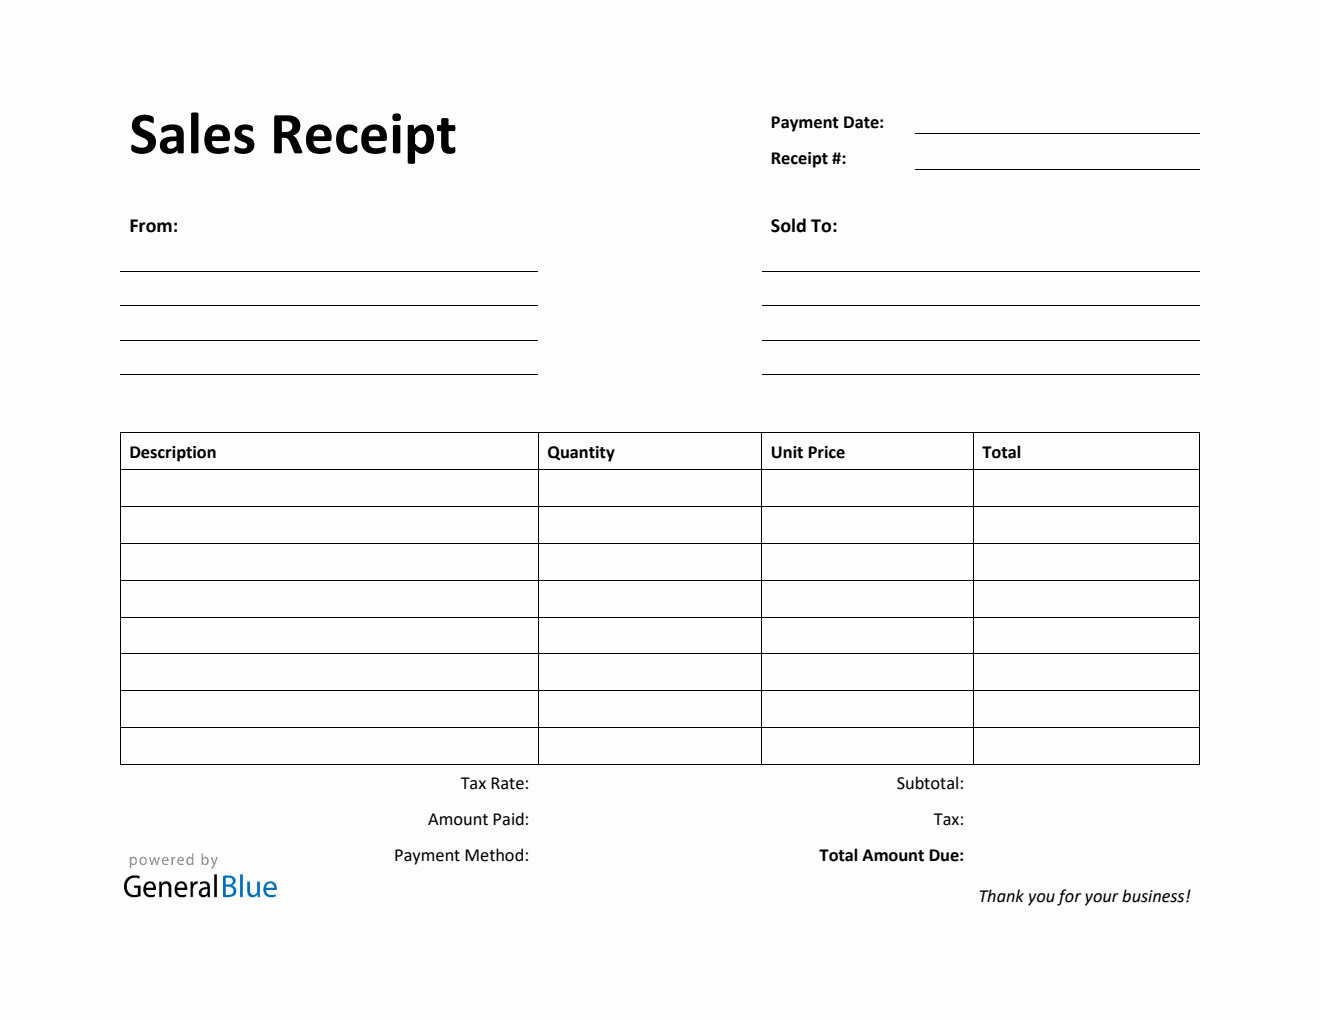 Sales Receipt Template in Word (Printable)